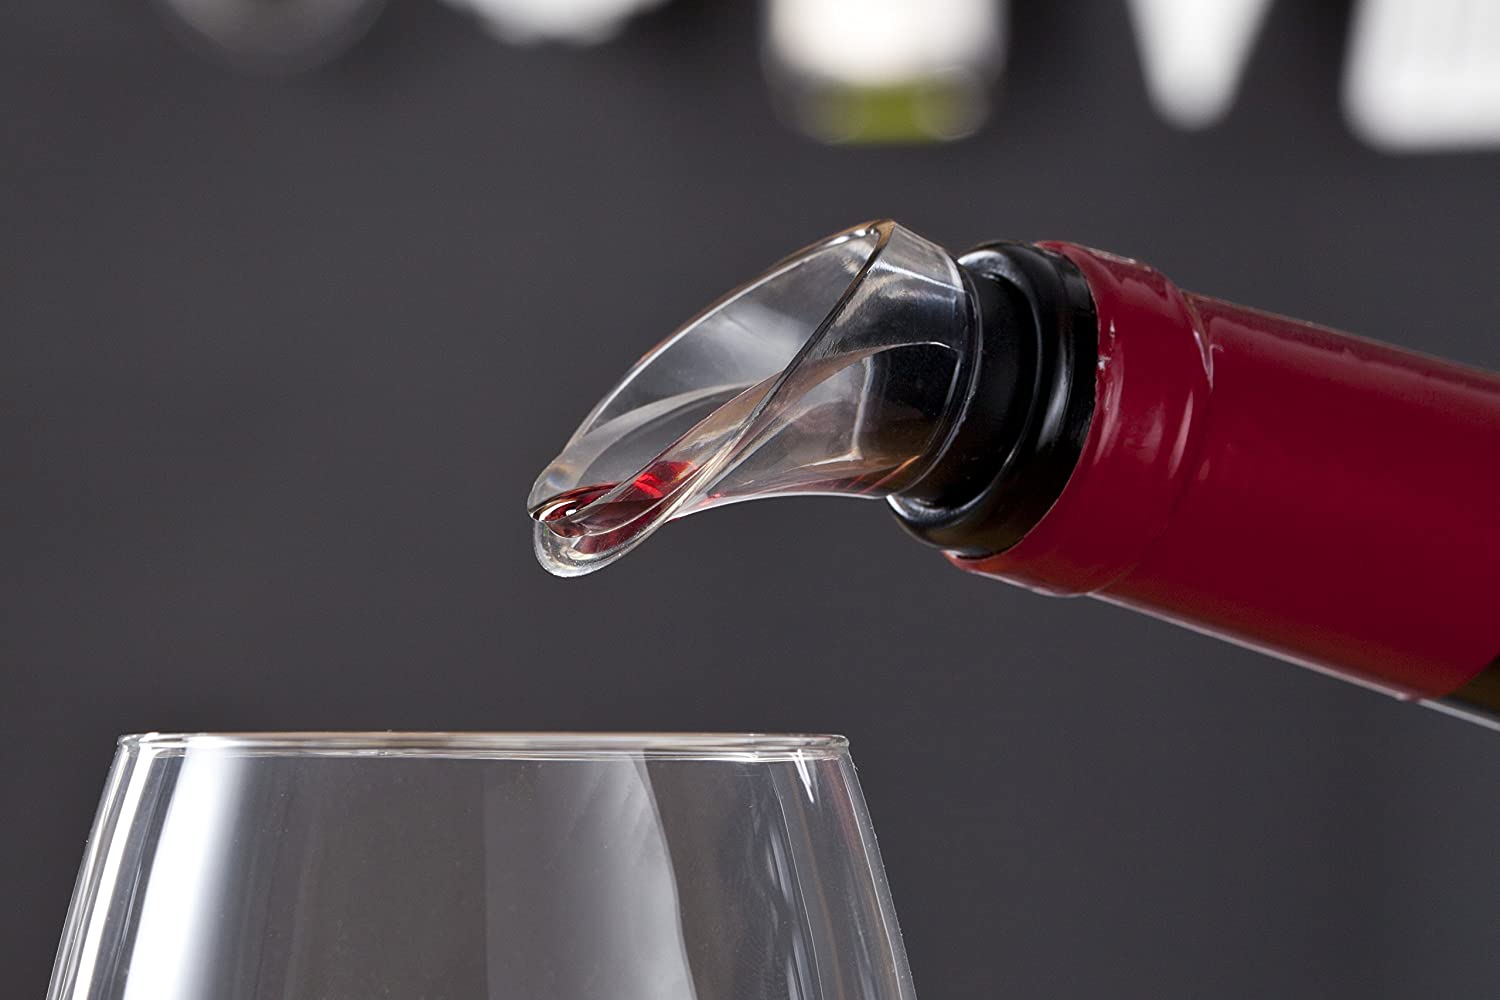 Vacu Vin J-Hook Wine Crystal Server Pourer – Set of 2